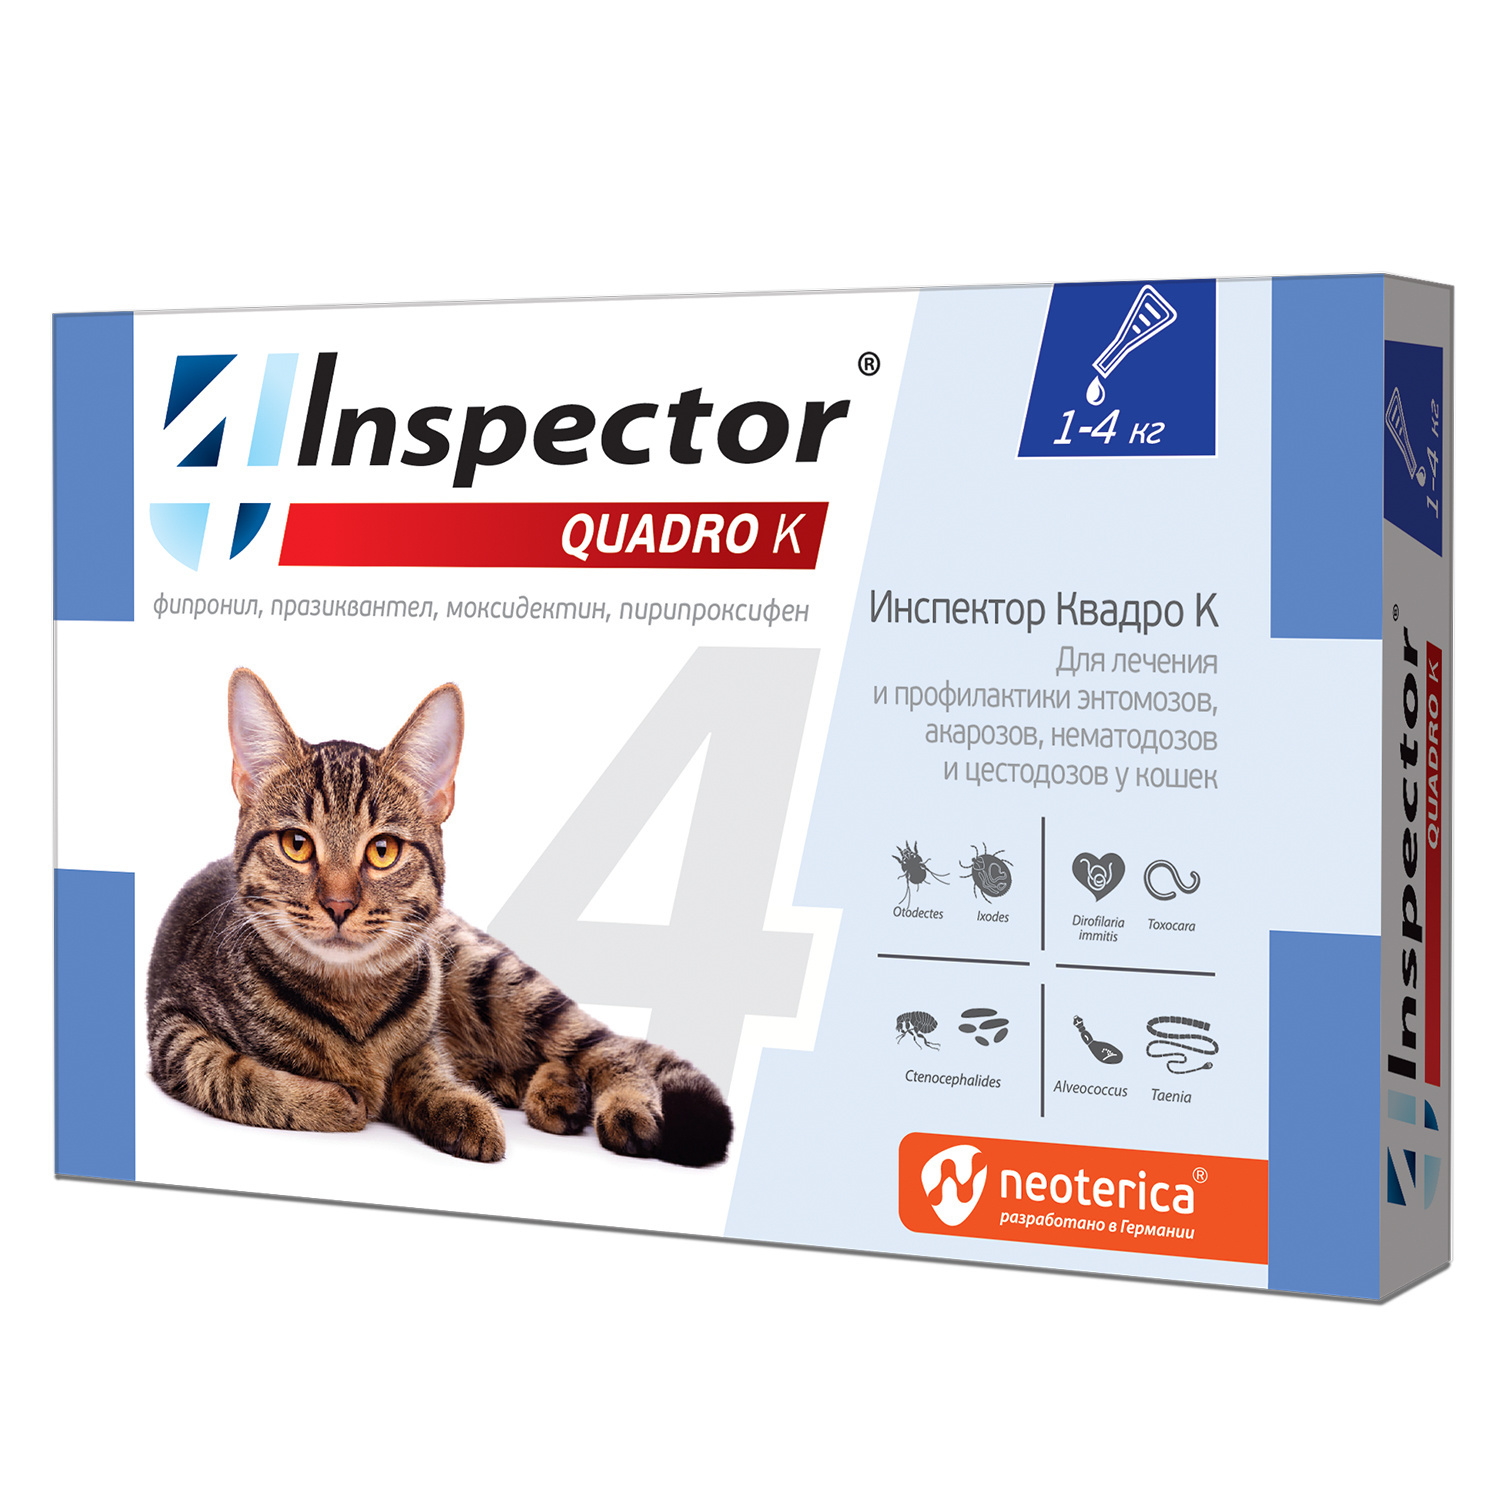 Inspector Inspector quadro капли на холку для кошек 1-4 кг, от глистов, насекомых, клещей (180 г)